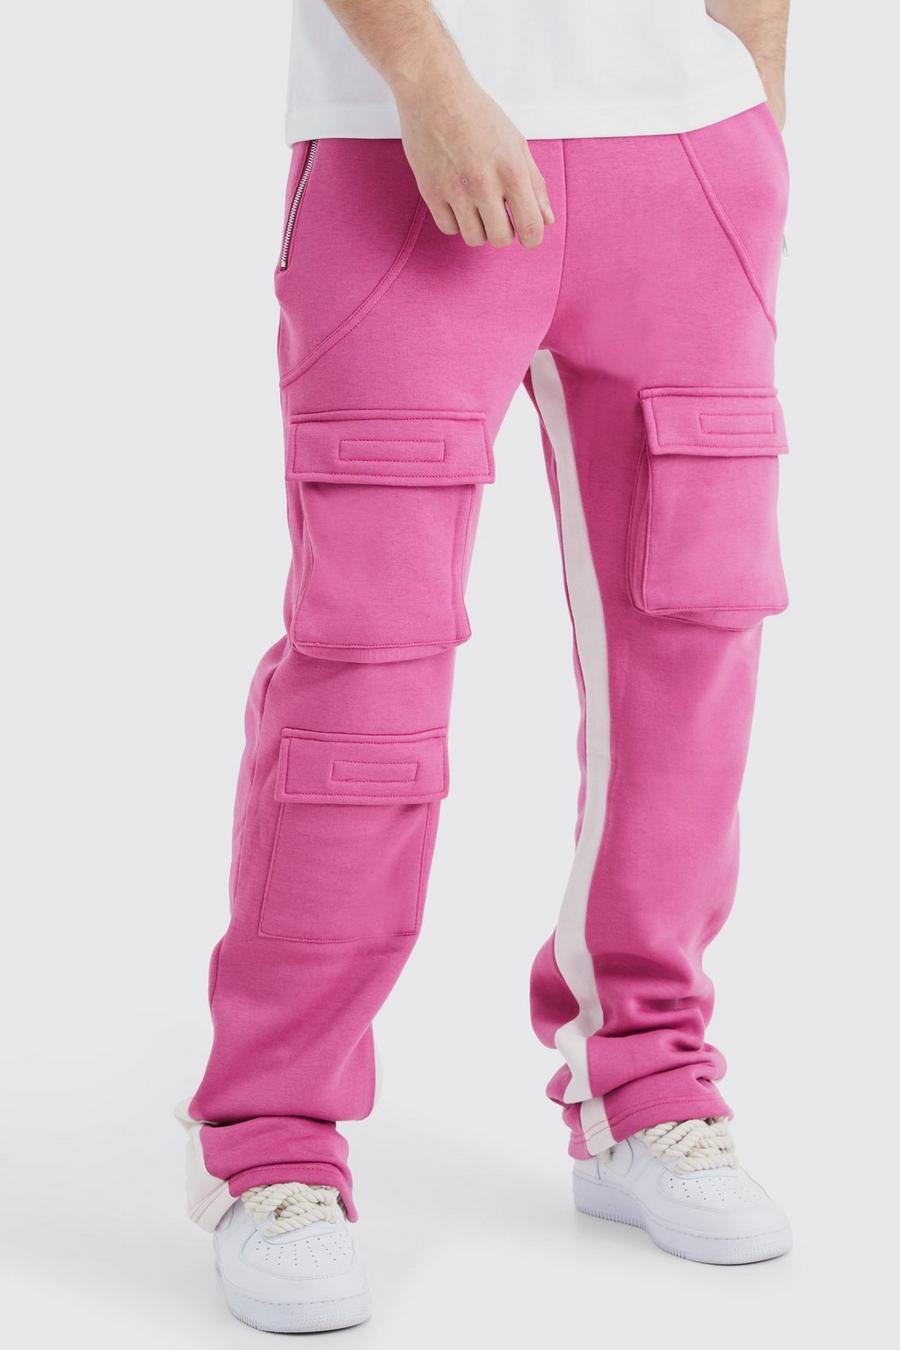 Pantalón deportivo Tall cargo de campana con refuerzos, Pink rosa